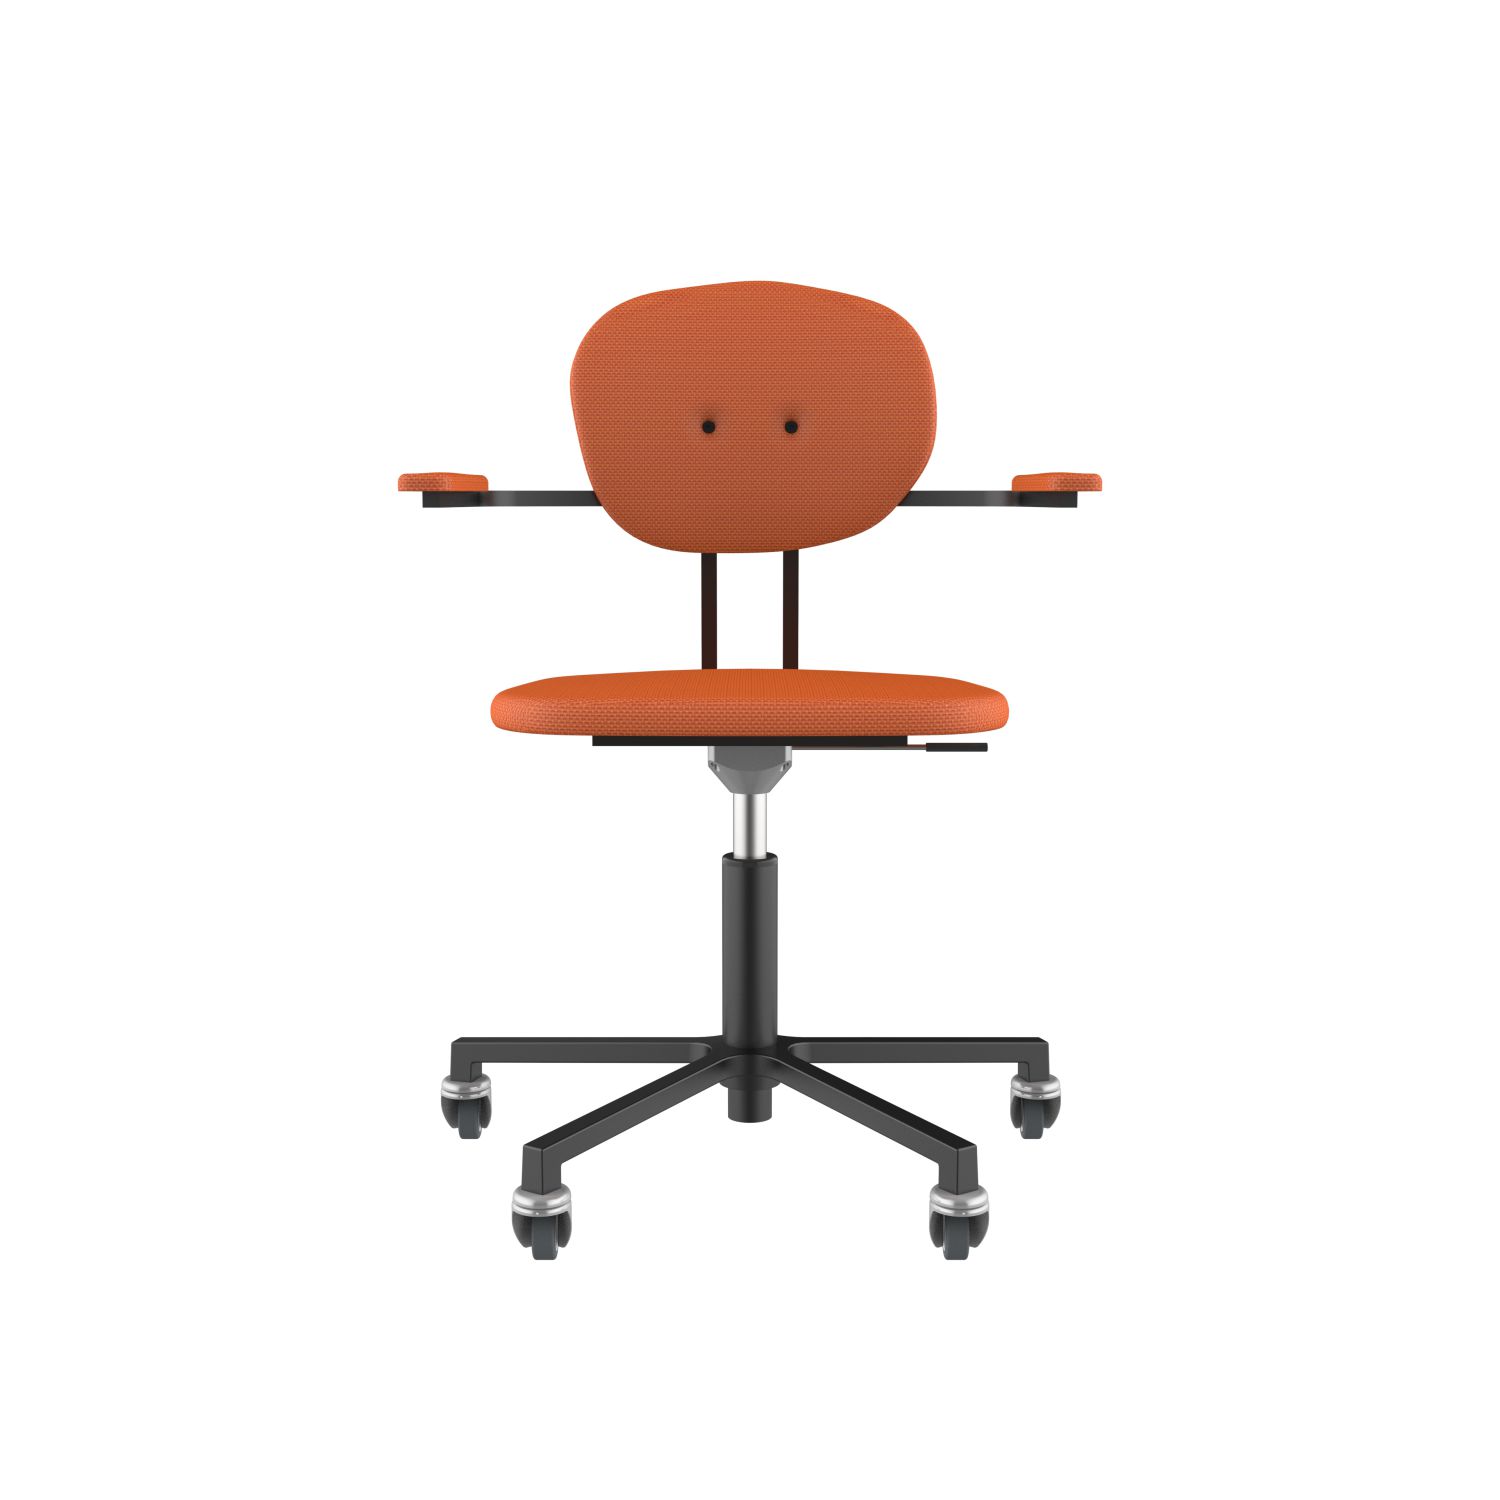 lensvelt maarten baas office chair with armrests backrest a burn orange 102 black ral9005 soft wheels